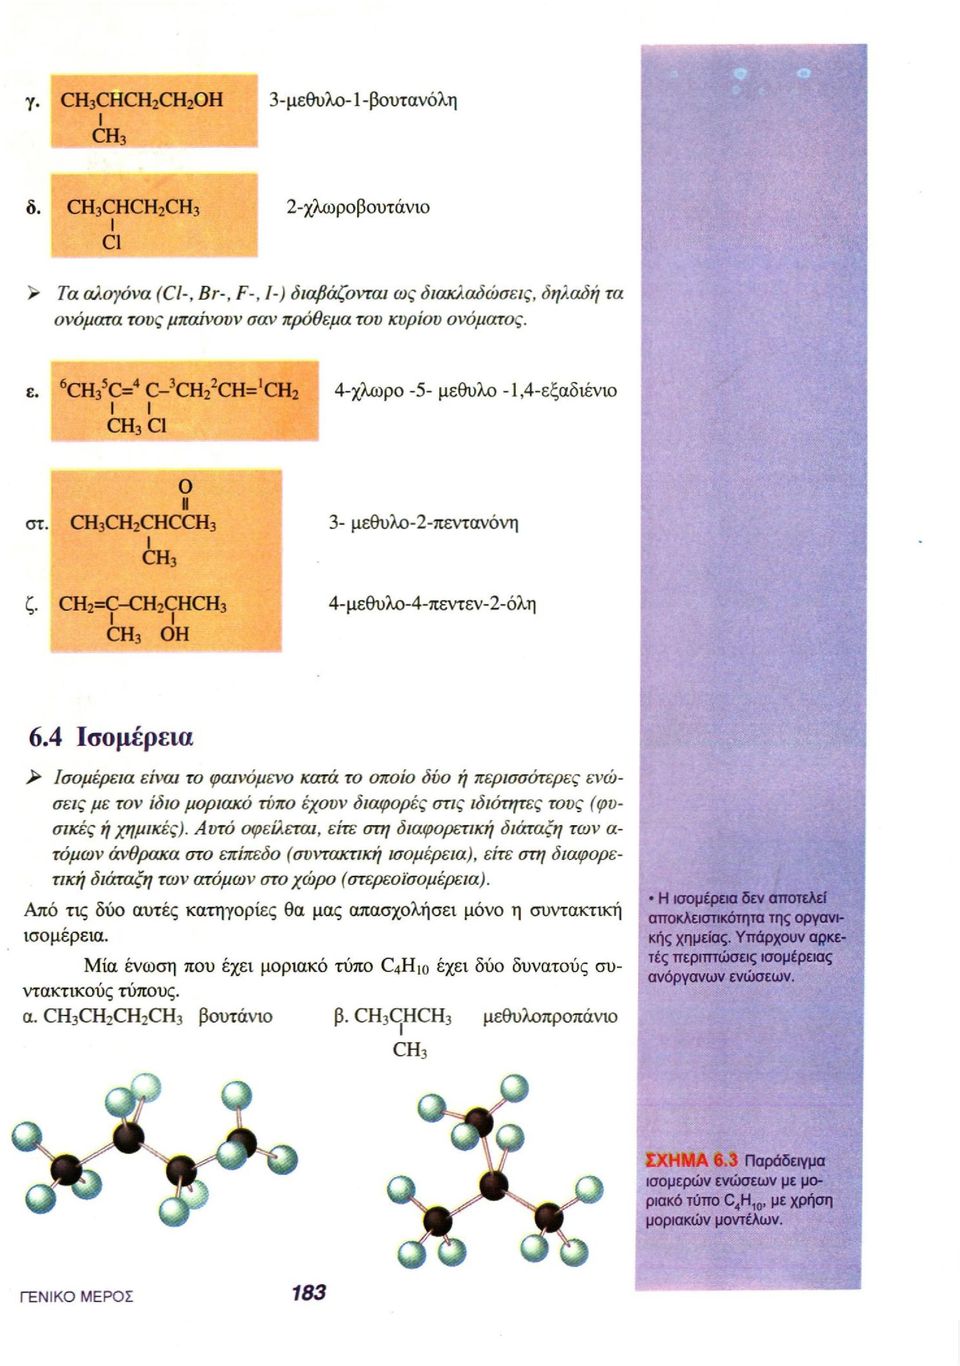 4 Ισομέρεια > Ισομέρεια είναι το φαινόμενο κατά το οποίο δύο ή περισσότερες ενώσεις με τον ίδιο μοριακό τύπο έχουν διαφορές στις ιδιότητες τους (φυσικές ή χημικές).